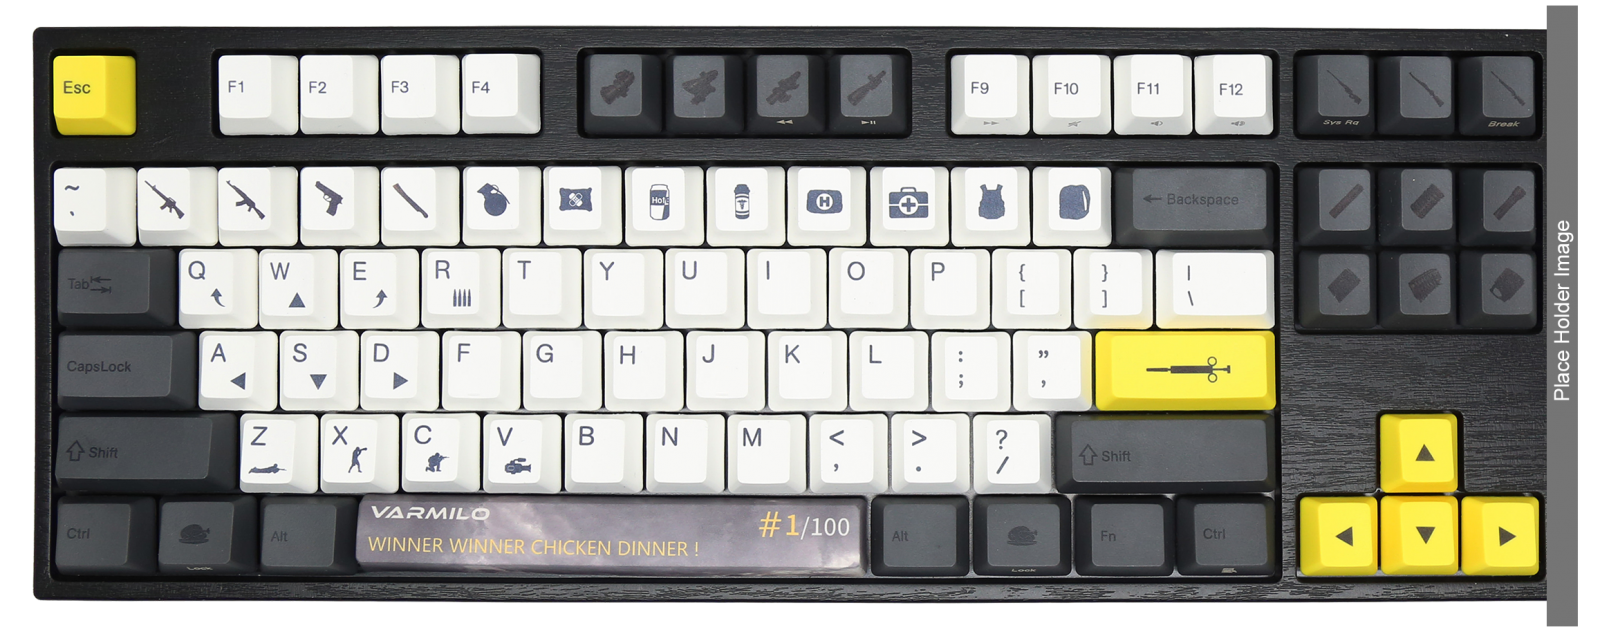 shroud keyboard layout pubg